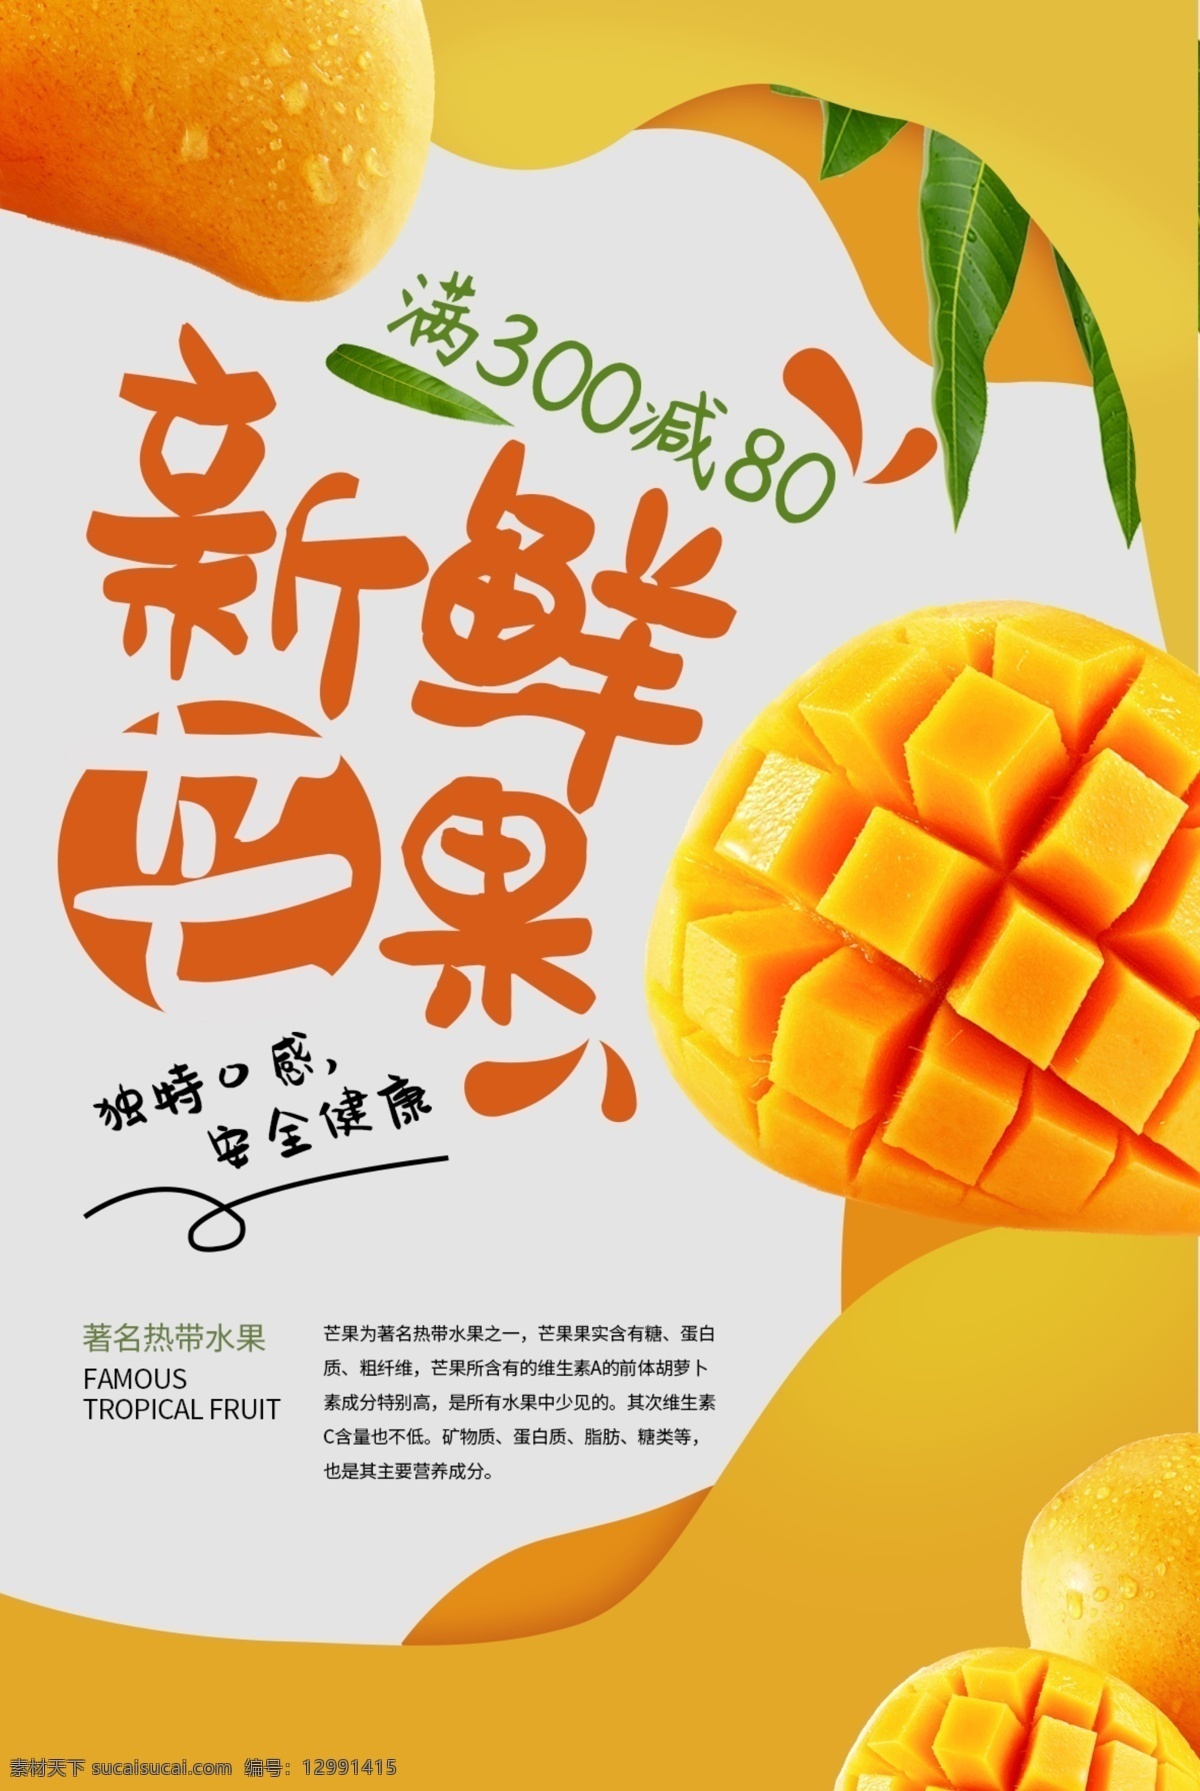 新鲜 芒果 活动 促销 宣传海报 新鲜芒果 宣传 海报 饮料 饮品 甜品 类